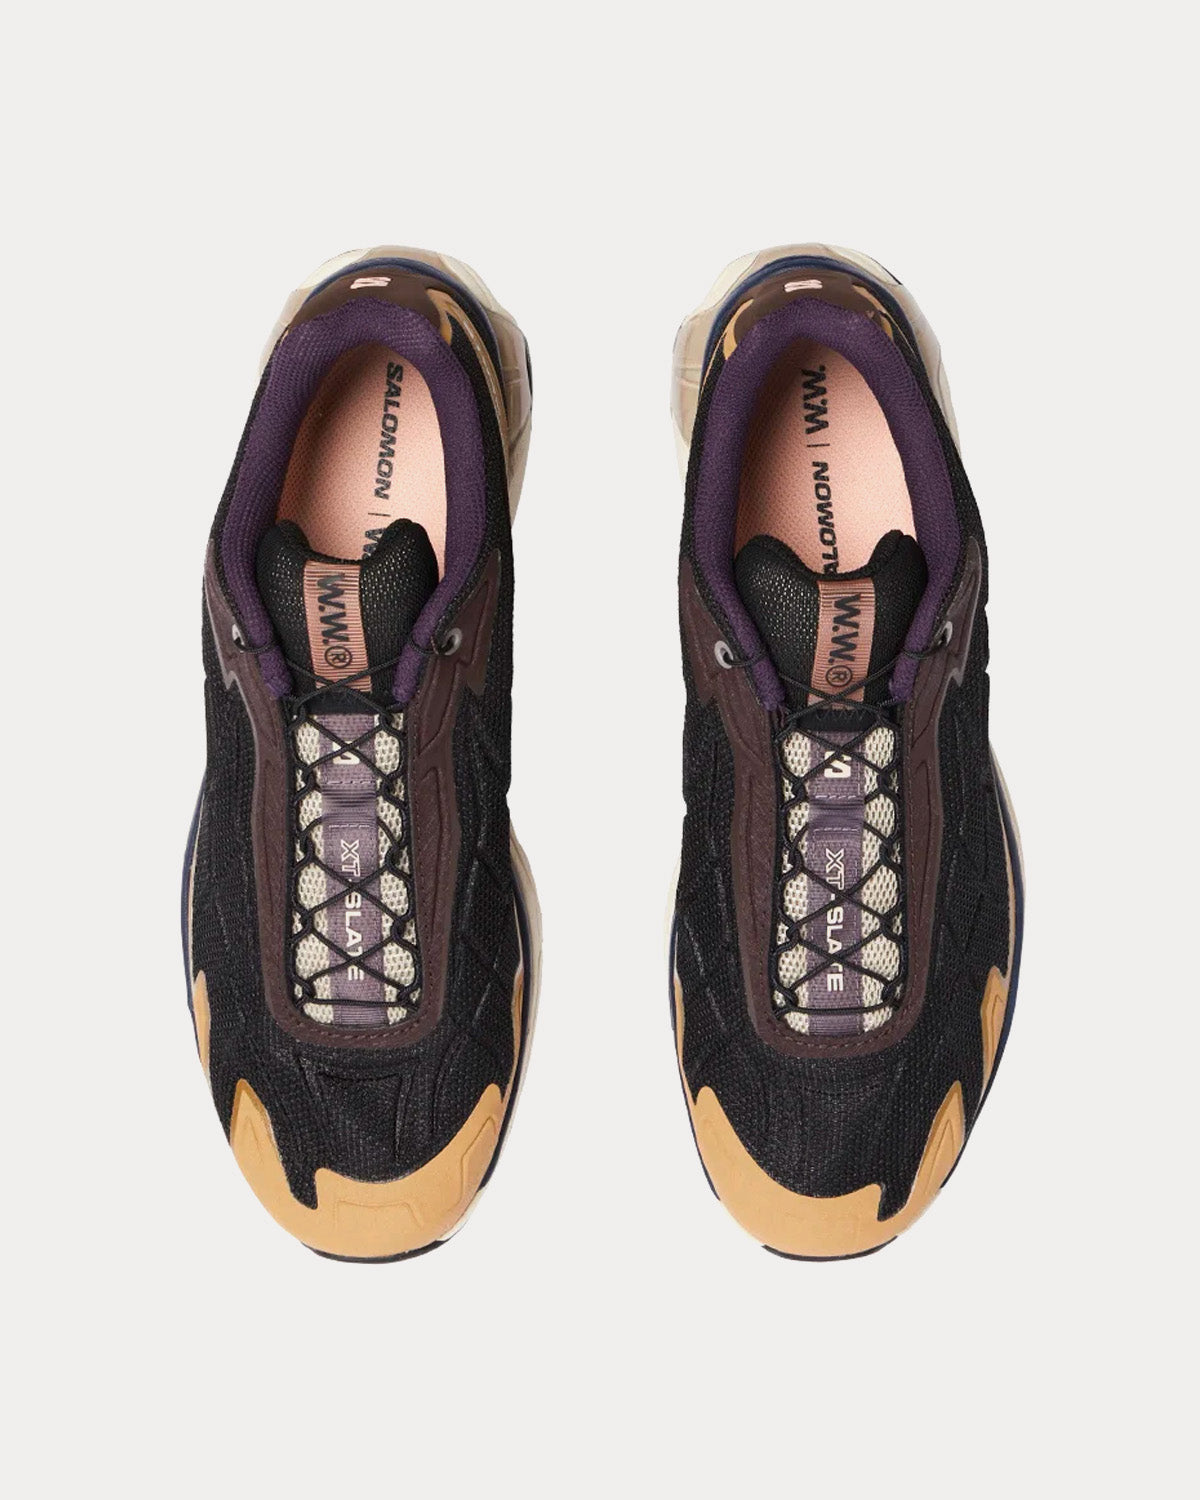 Salomon x Wood Wood - XT-Slate Advanced Low Top Sneakers